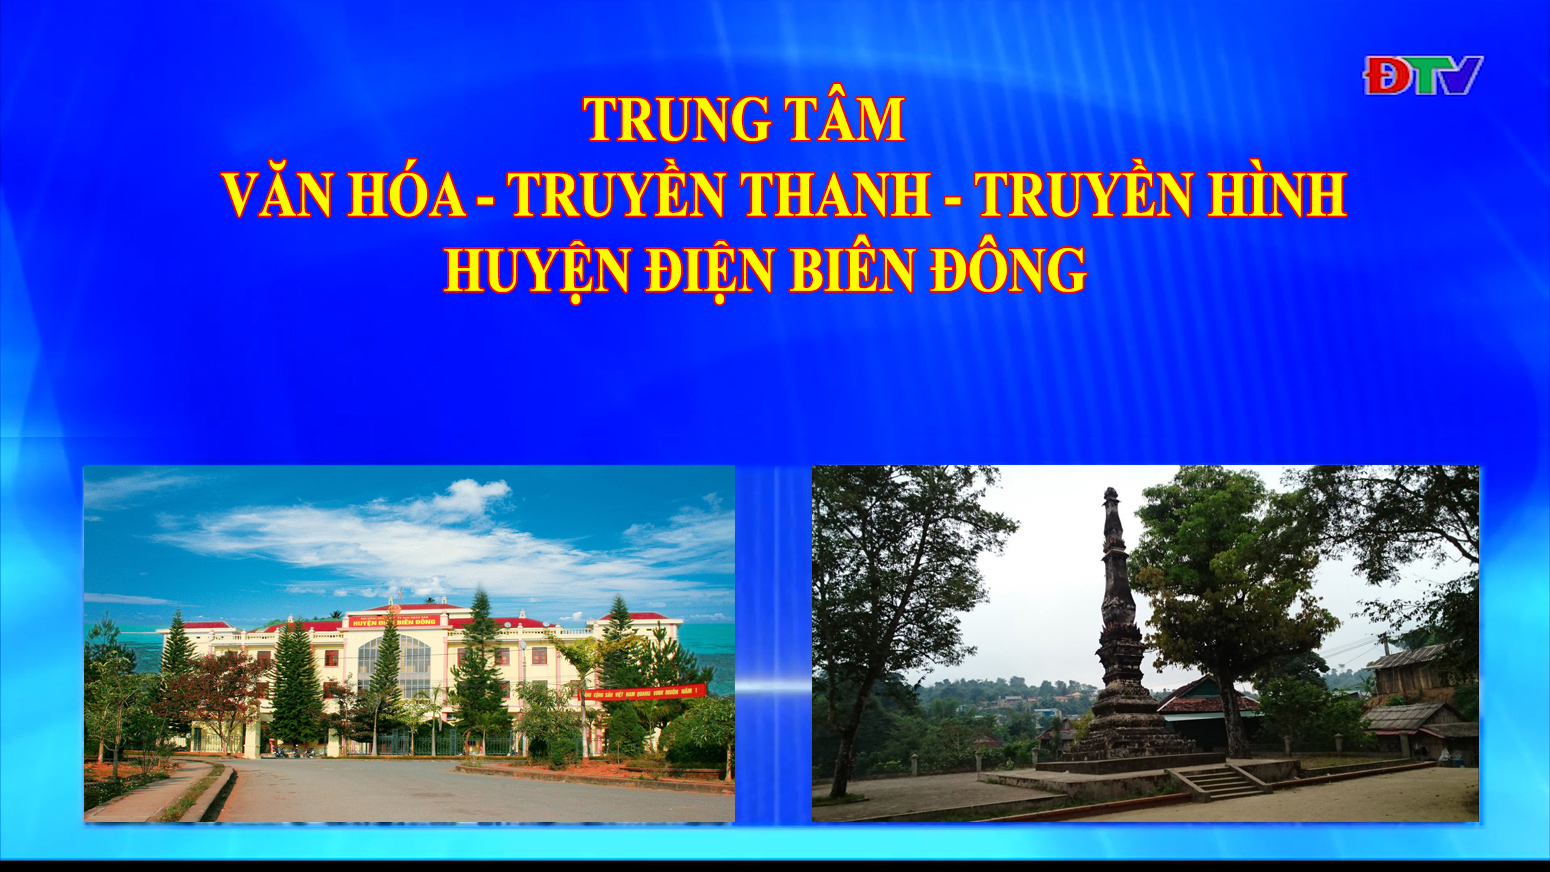 Trung tâm VH-TTTH huyện Điện Biên Đông (Ngày 4-6-2022)